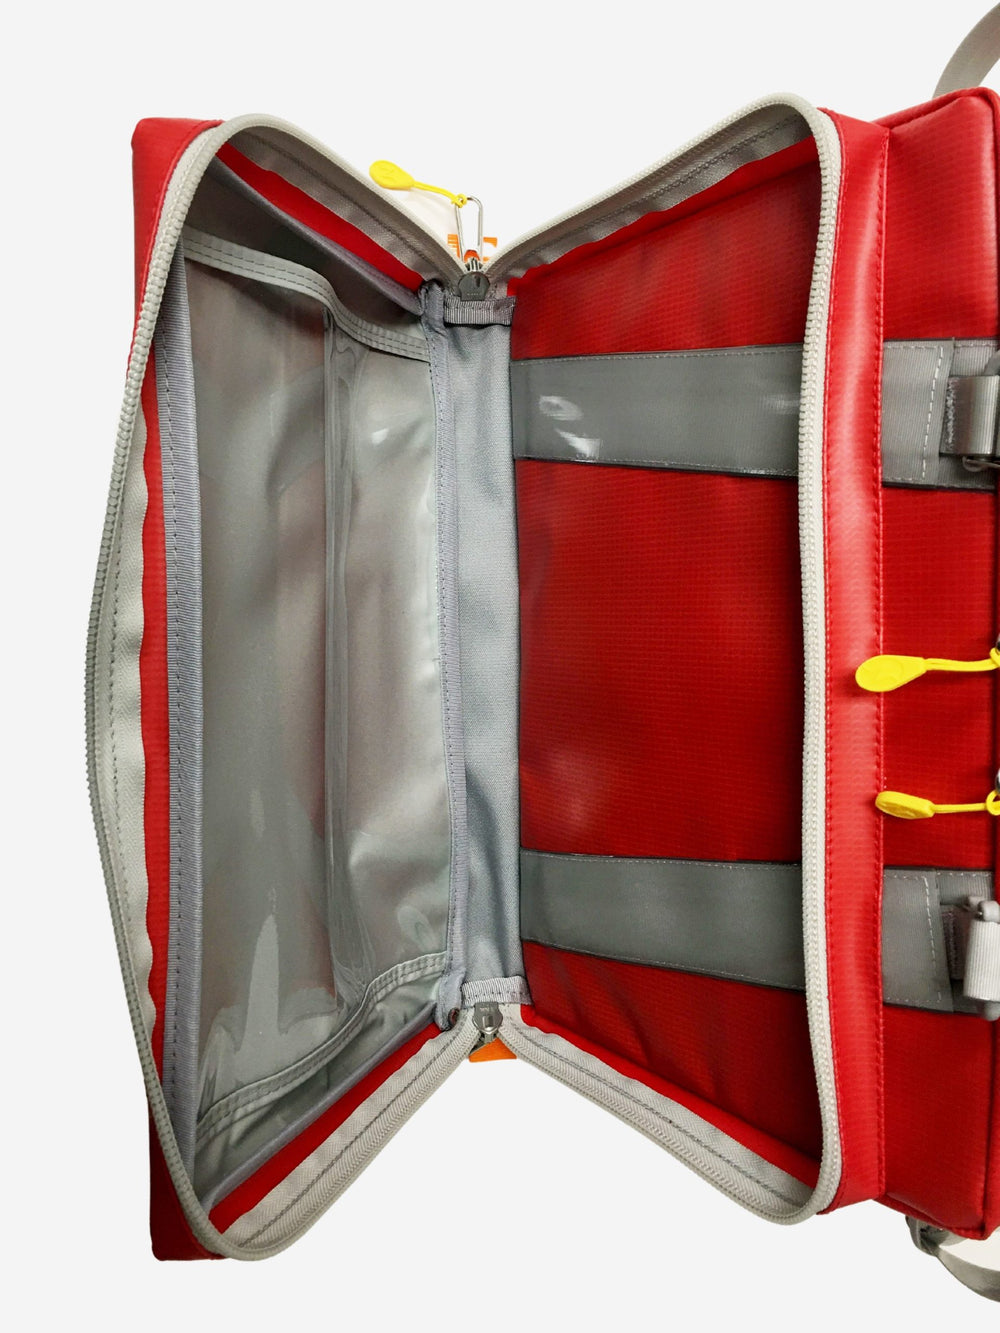 Neann TEK Trauma Equipment Kit Bag Only - Red